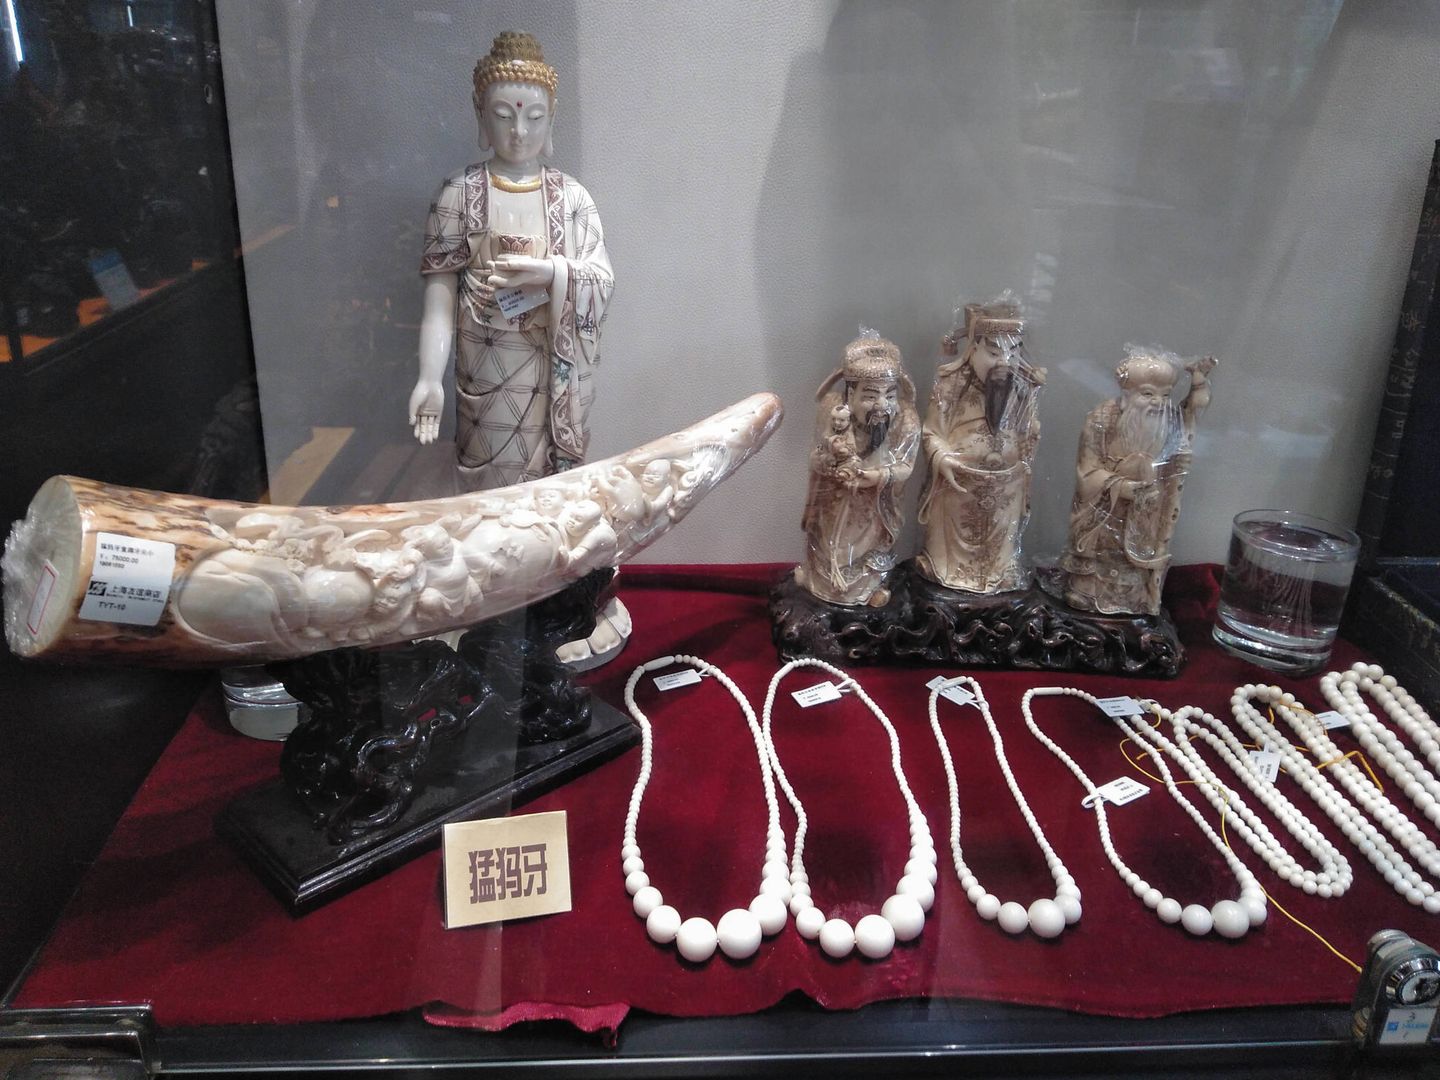 'Mamut' se lee en el cartel delante de los objetos tallados de marfil de esta vitrina de una establecimiento de artesanía de Shanghái. (L.G. Ajofrín)